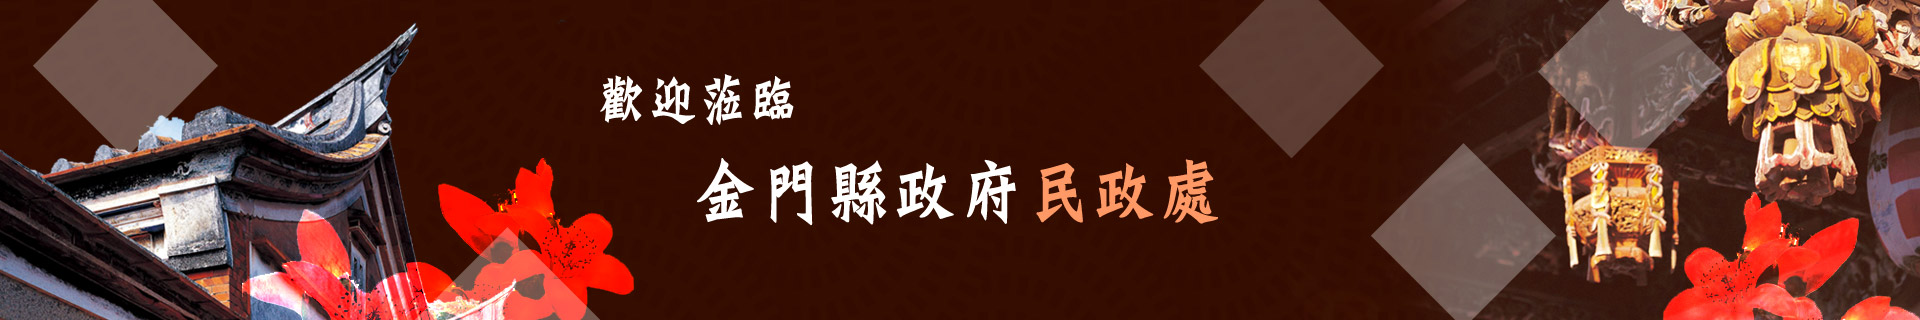 民政banner